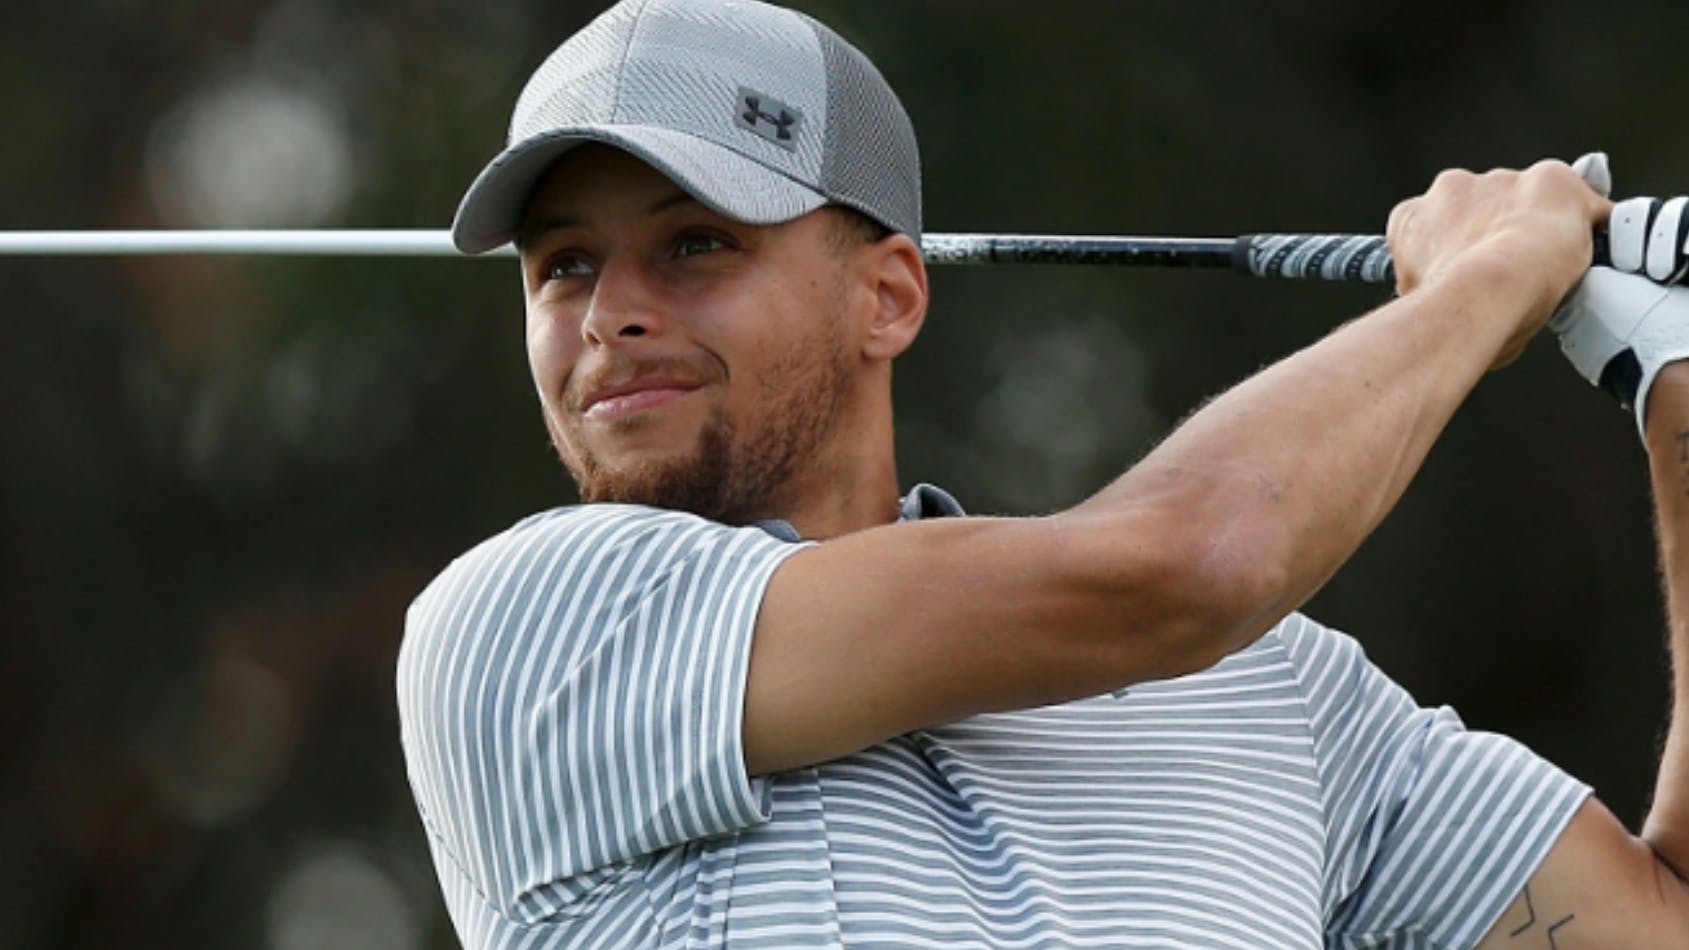 Golfer in a striped shirt swinging a golf club